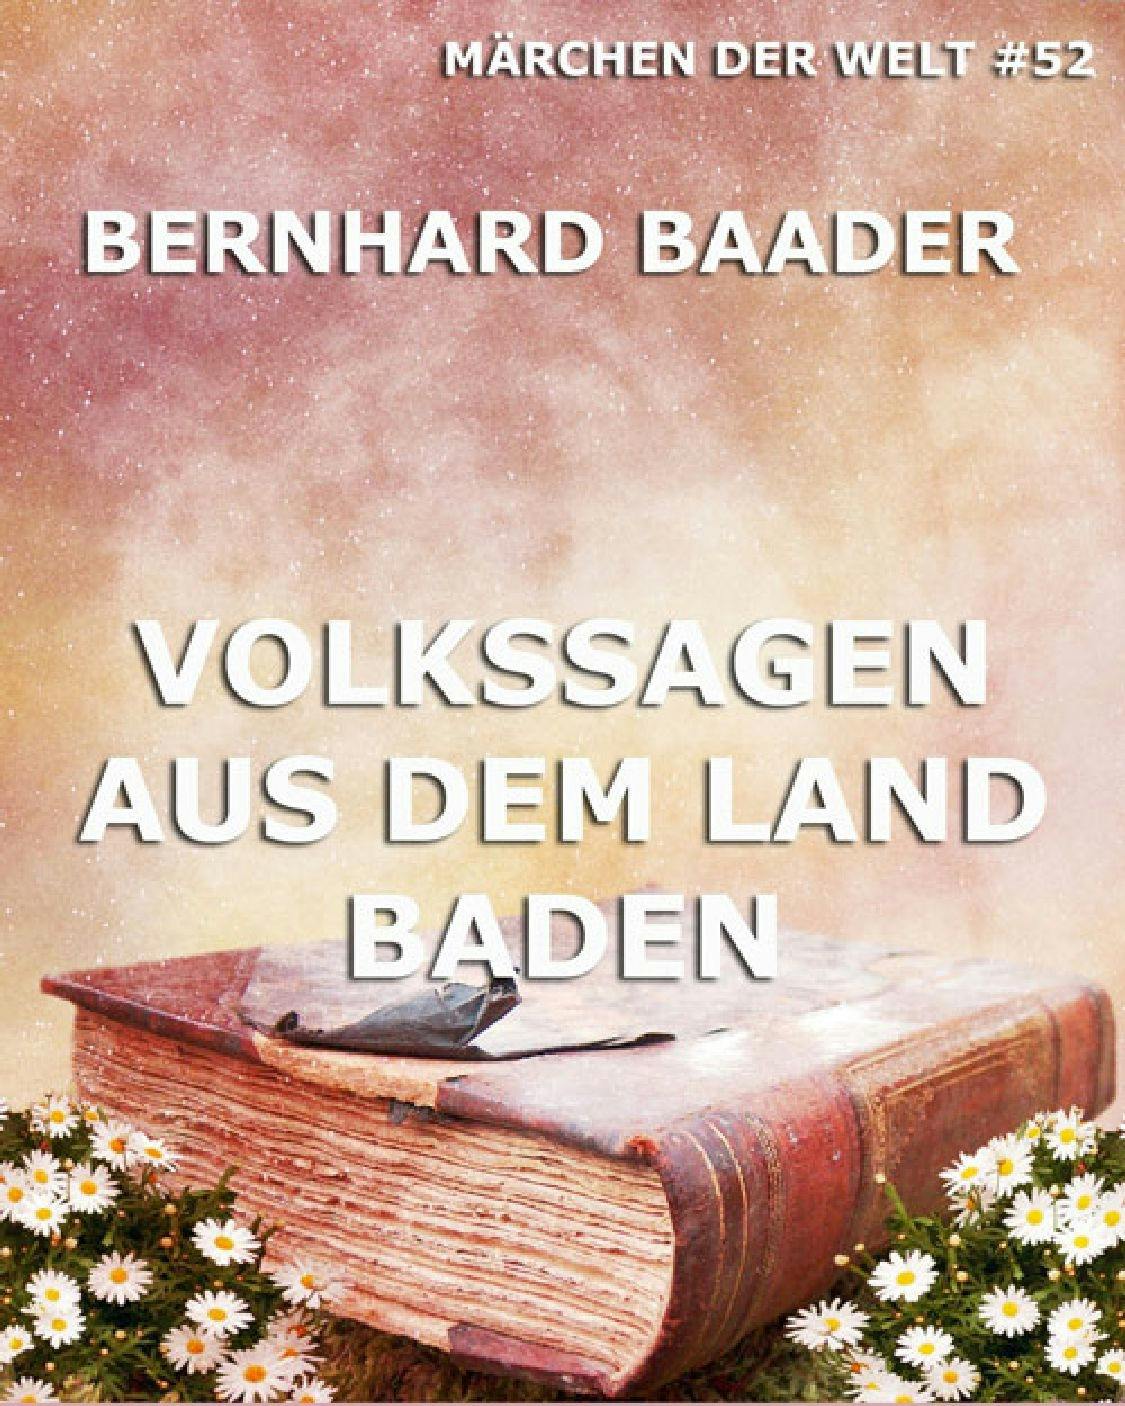 Volkssagen aus dem Land Baden - Bernhard Baader